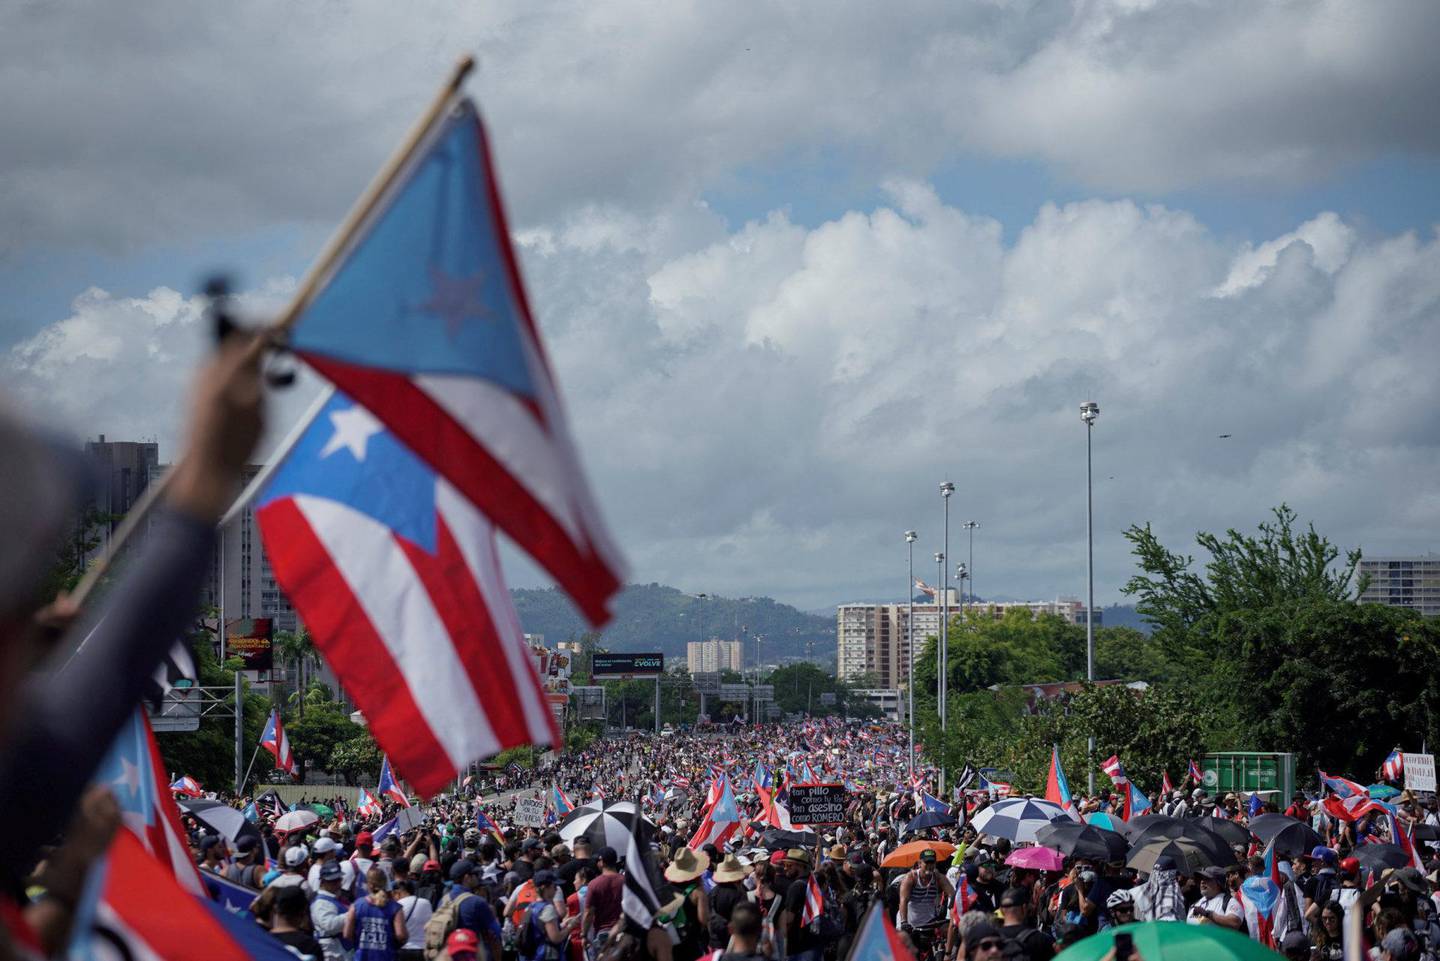 MANGE: Der er estimert at en halv million har deltatt i demonstrasjonene.FOTO: NTB SCANPIX